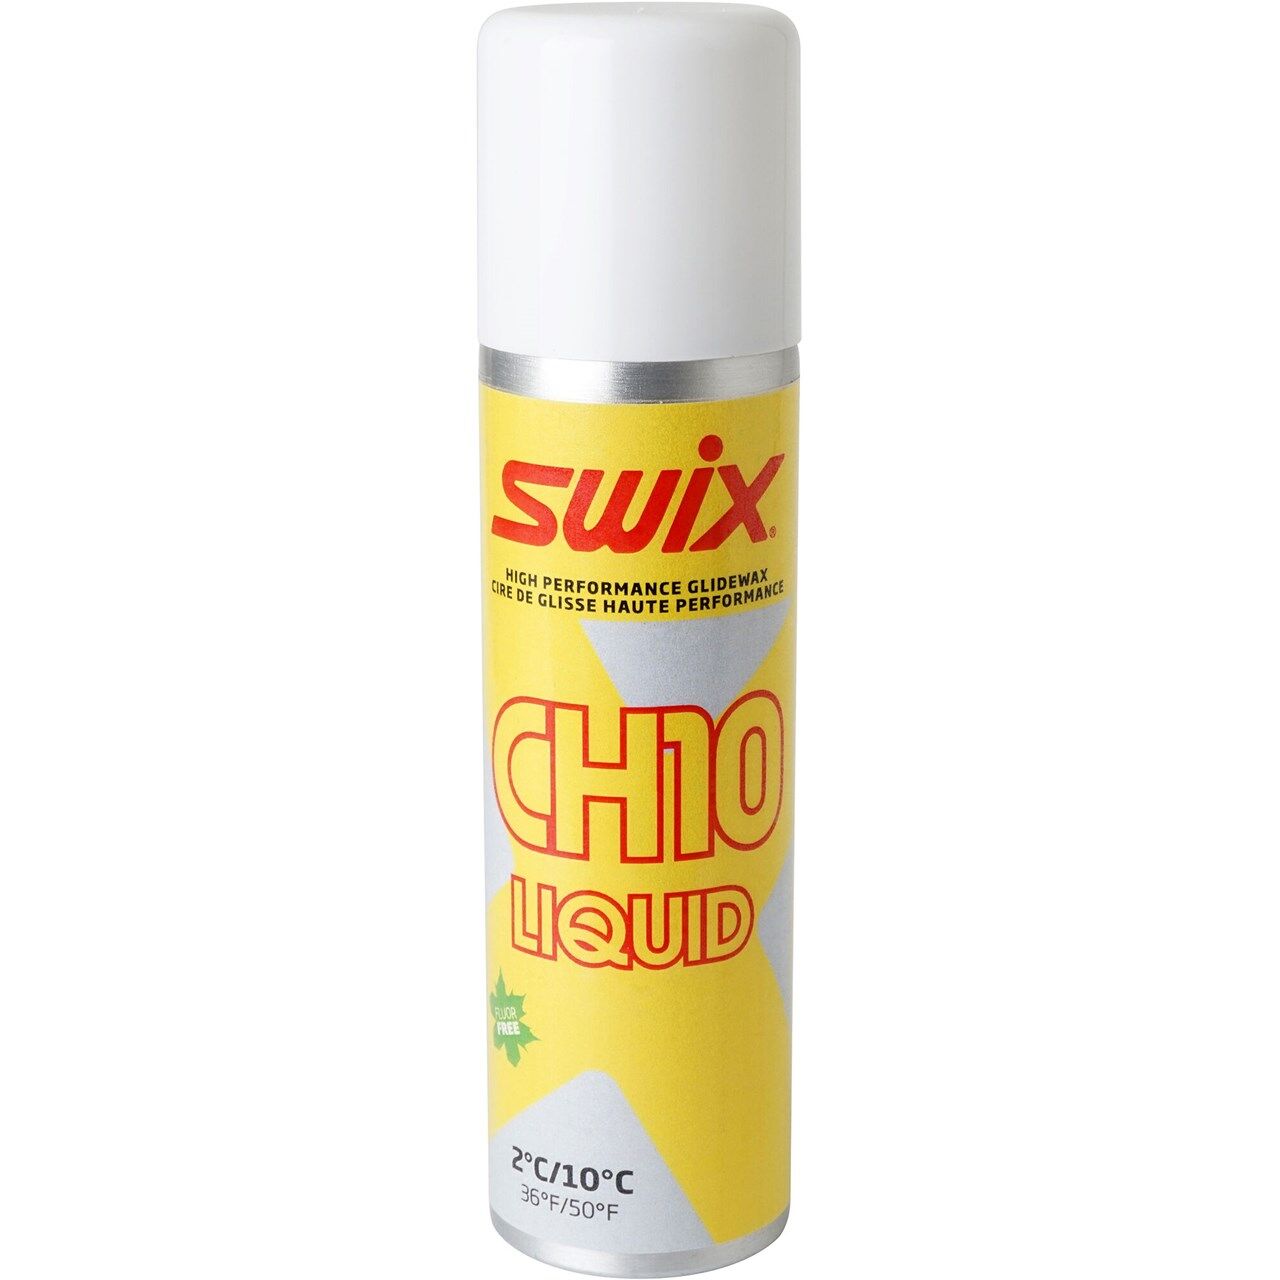 Swix CH10X Liquid 2C/10C (125ml) - Vosk | Hardloop